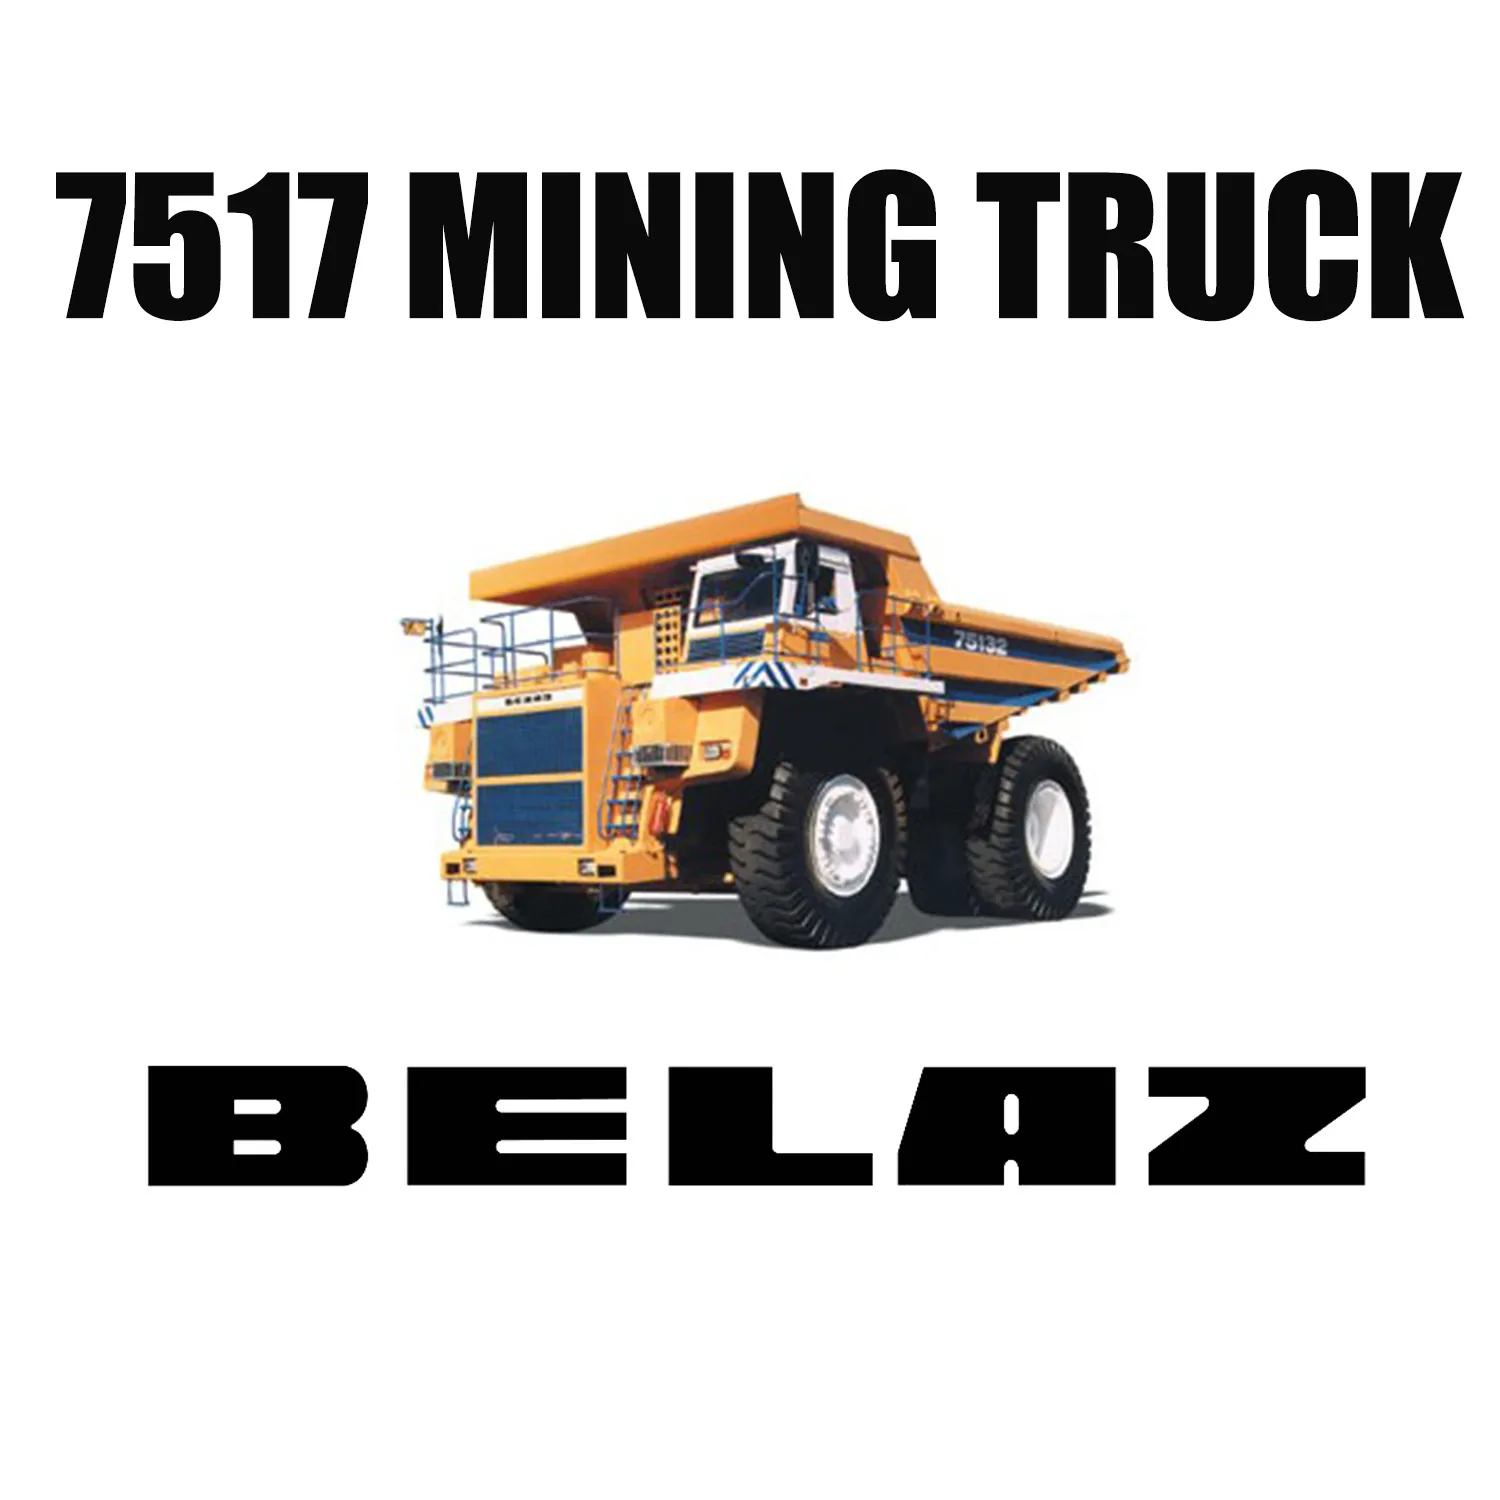 36.00R51 Ban Off the Road Mining dipasang pada BELAZ-7517 untuk Tambang Batubara